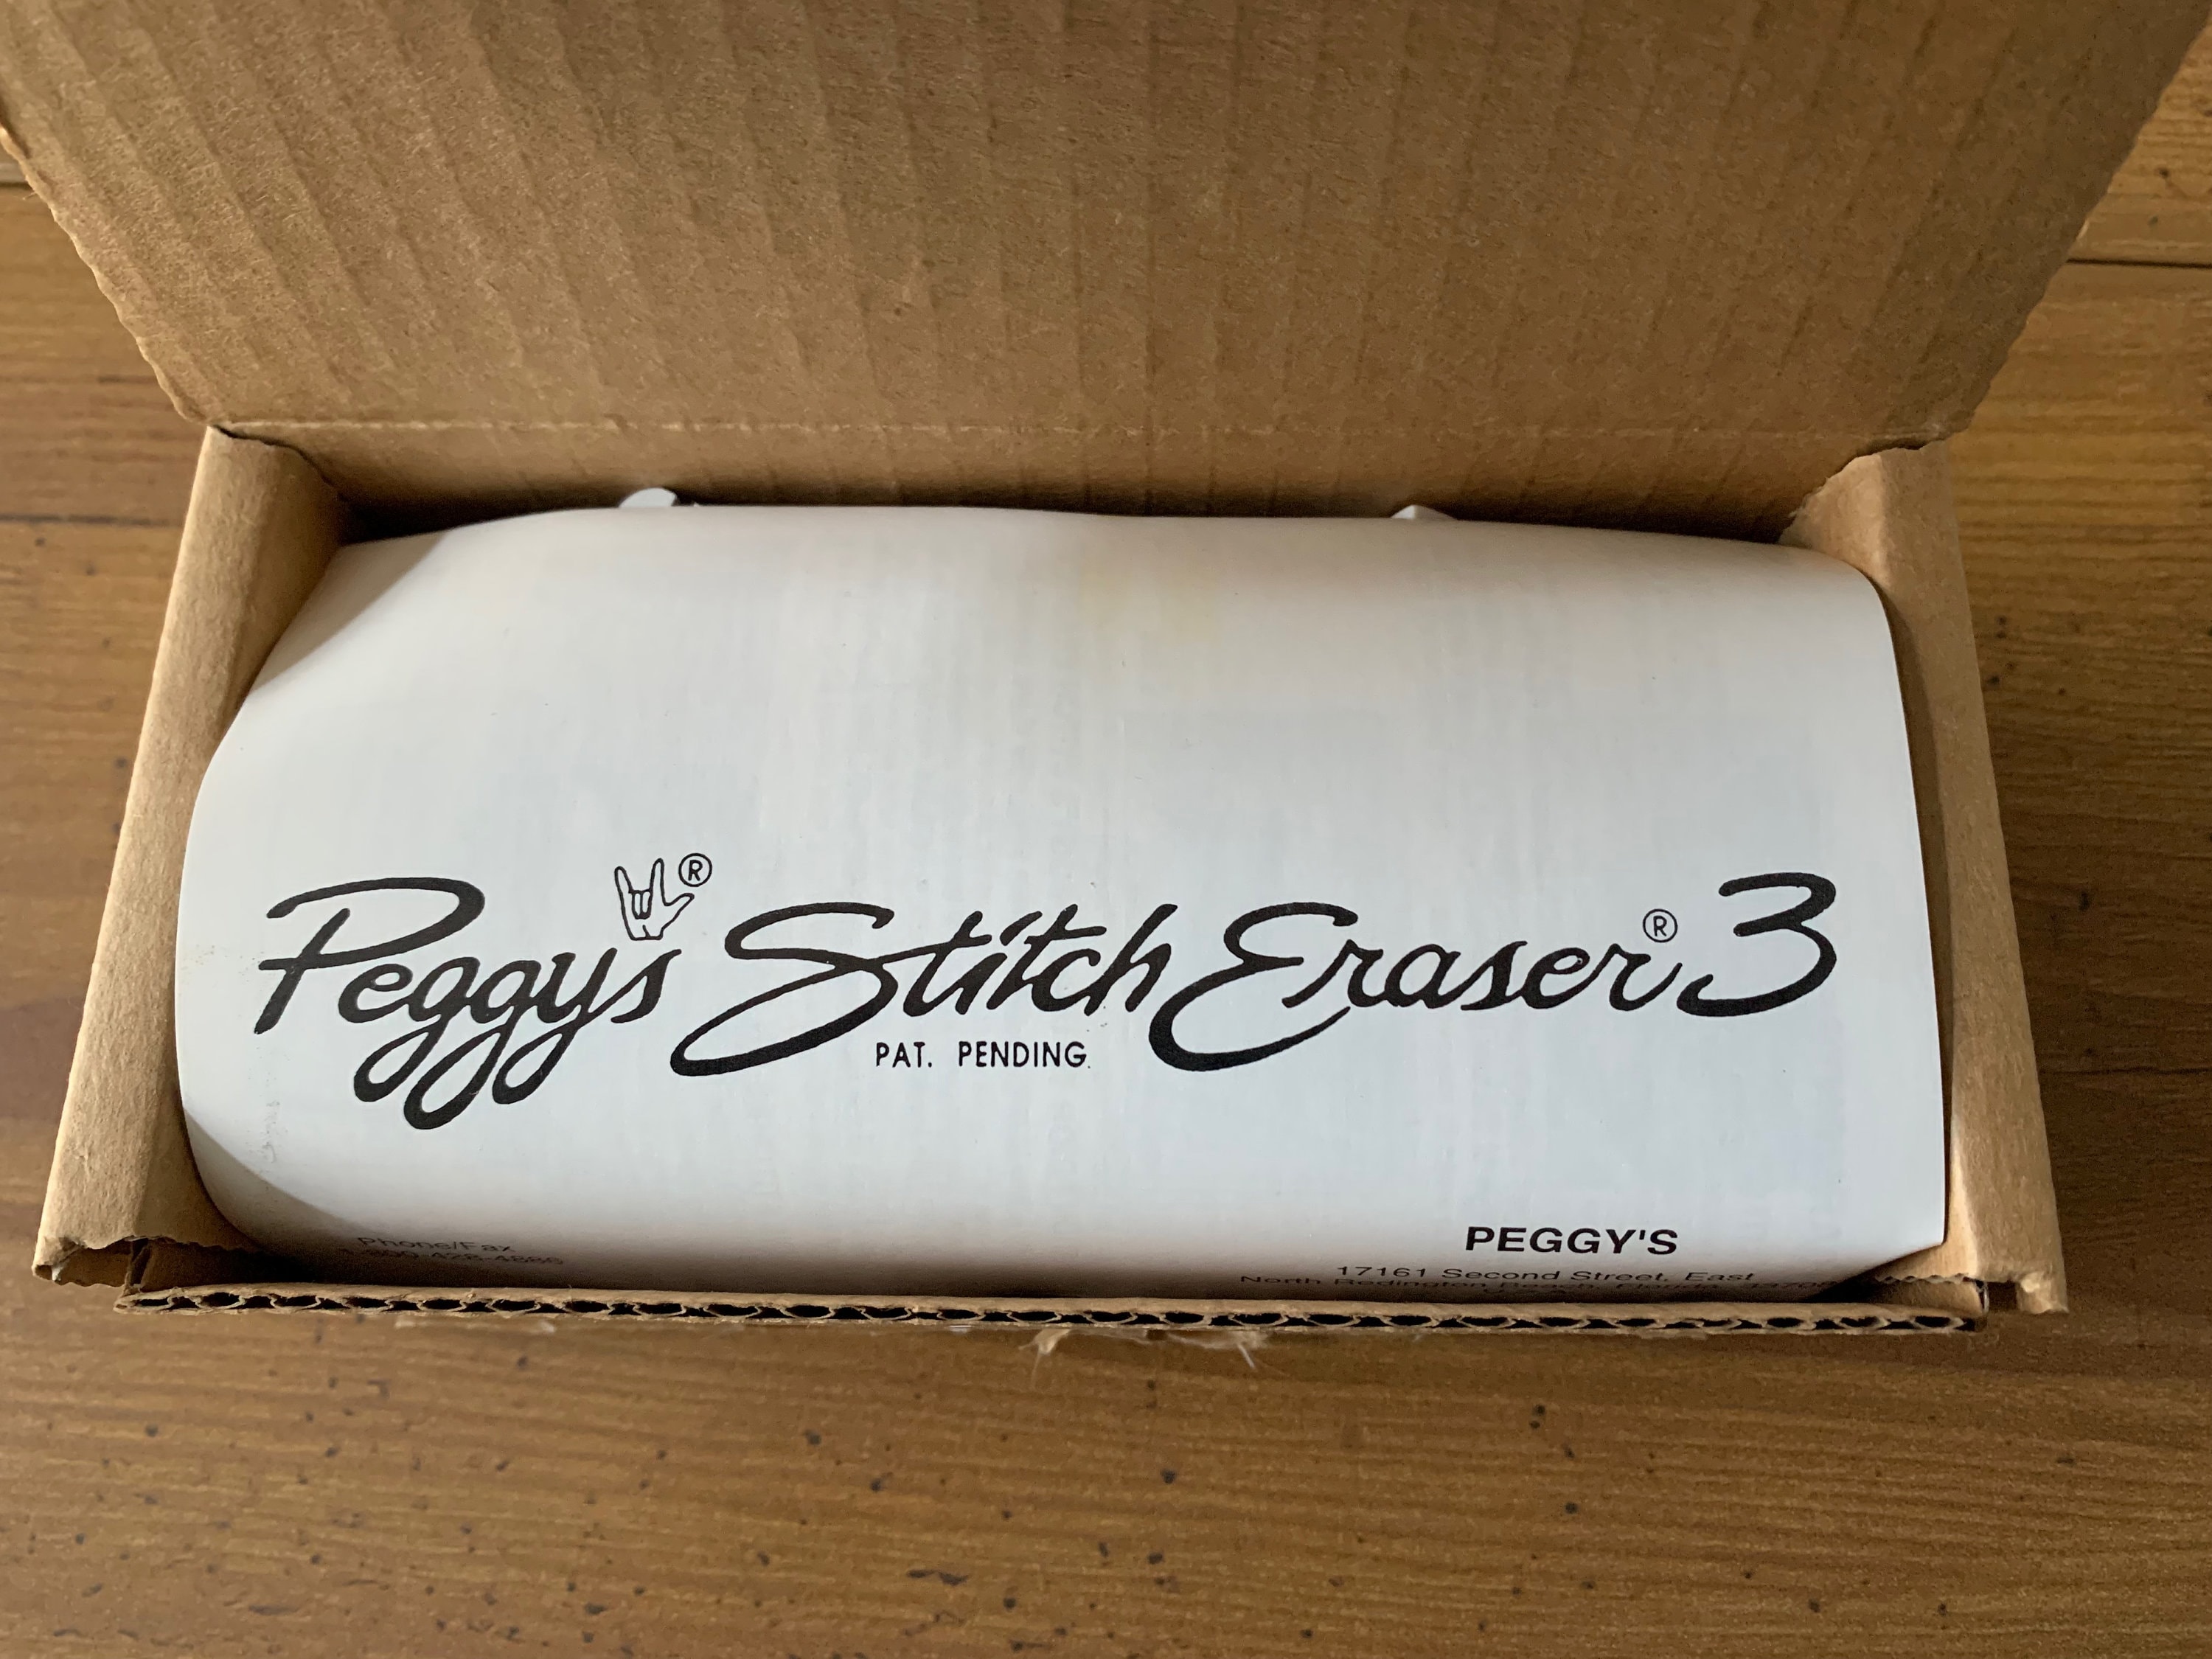 Peggy's Stitch Eraser 8